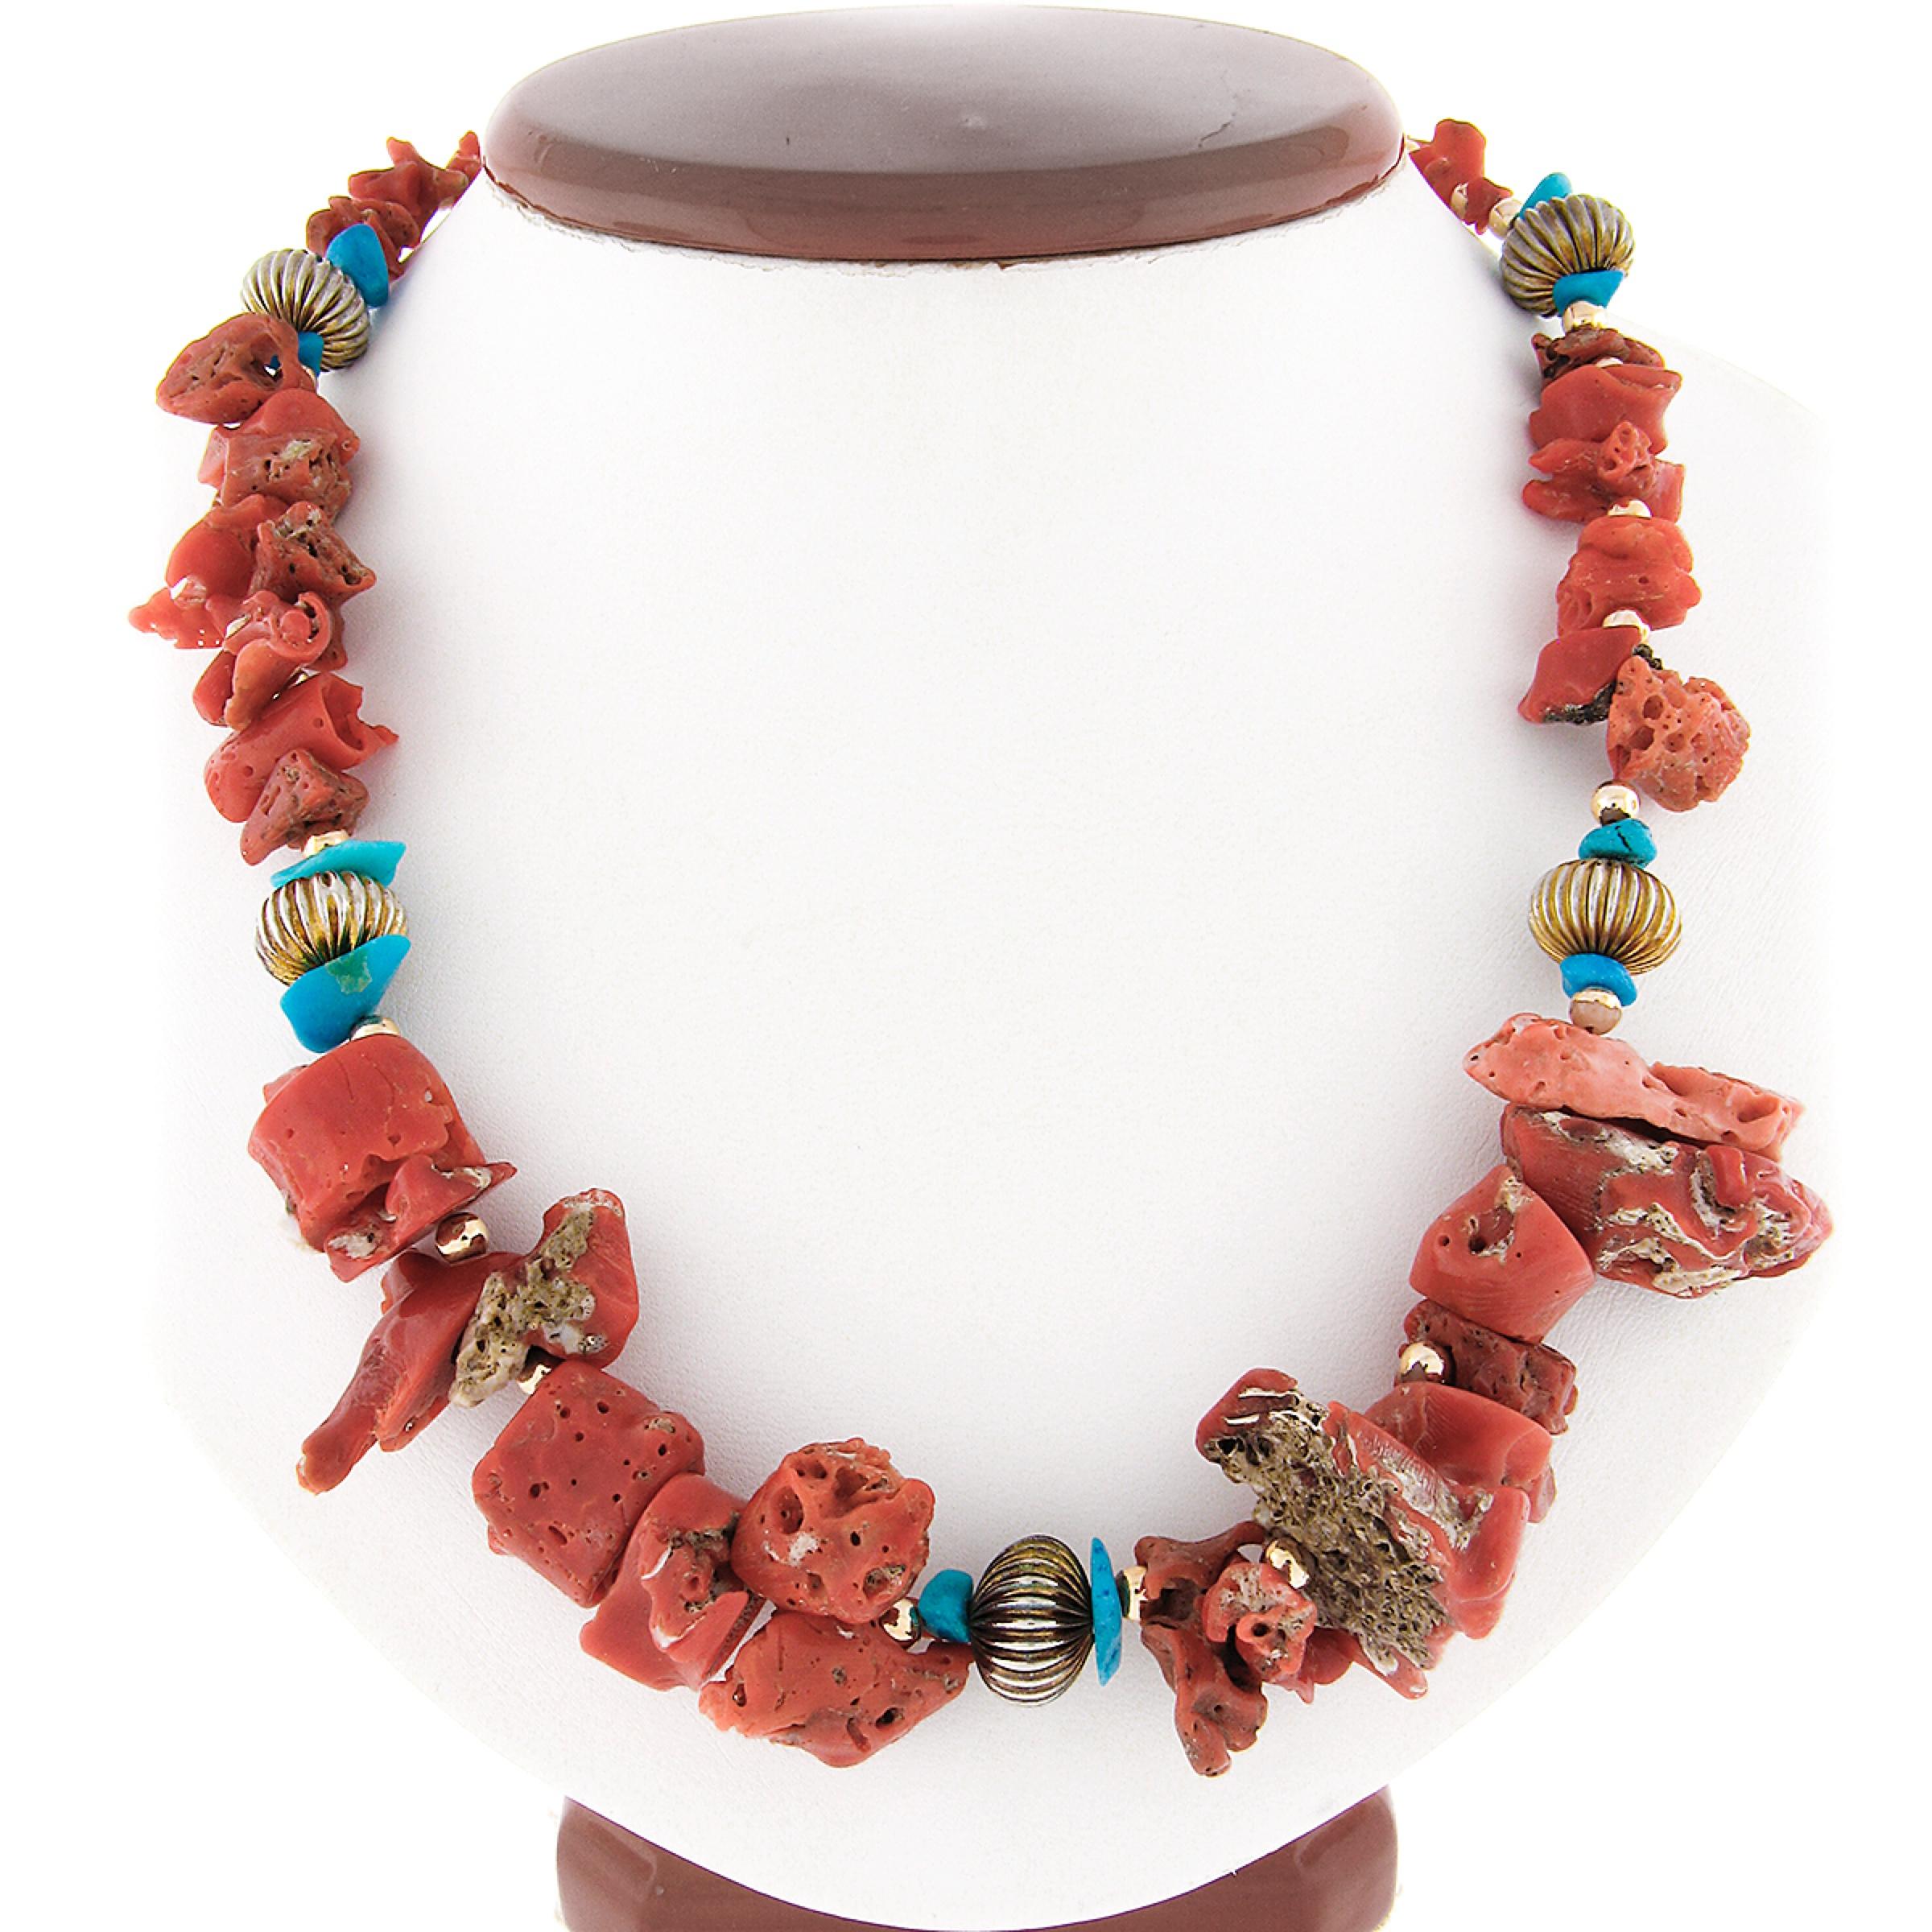 Diese prächtige Halskette besteht aus natürlichen, frei geformten Korallen- und Türkisperlen, die sauber aufgereiht sind und durchgehend mit Metallabstandshaltern versehen sind. Die wunderschönen Korallen sind GIA-zertifiziert (2 Perlen wurden nach